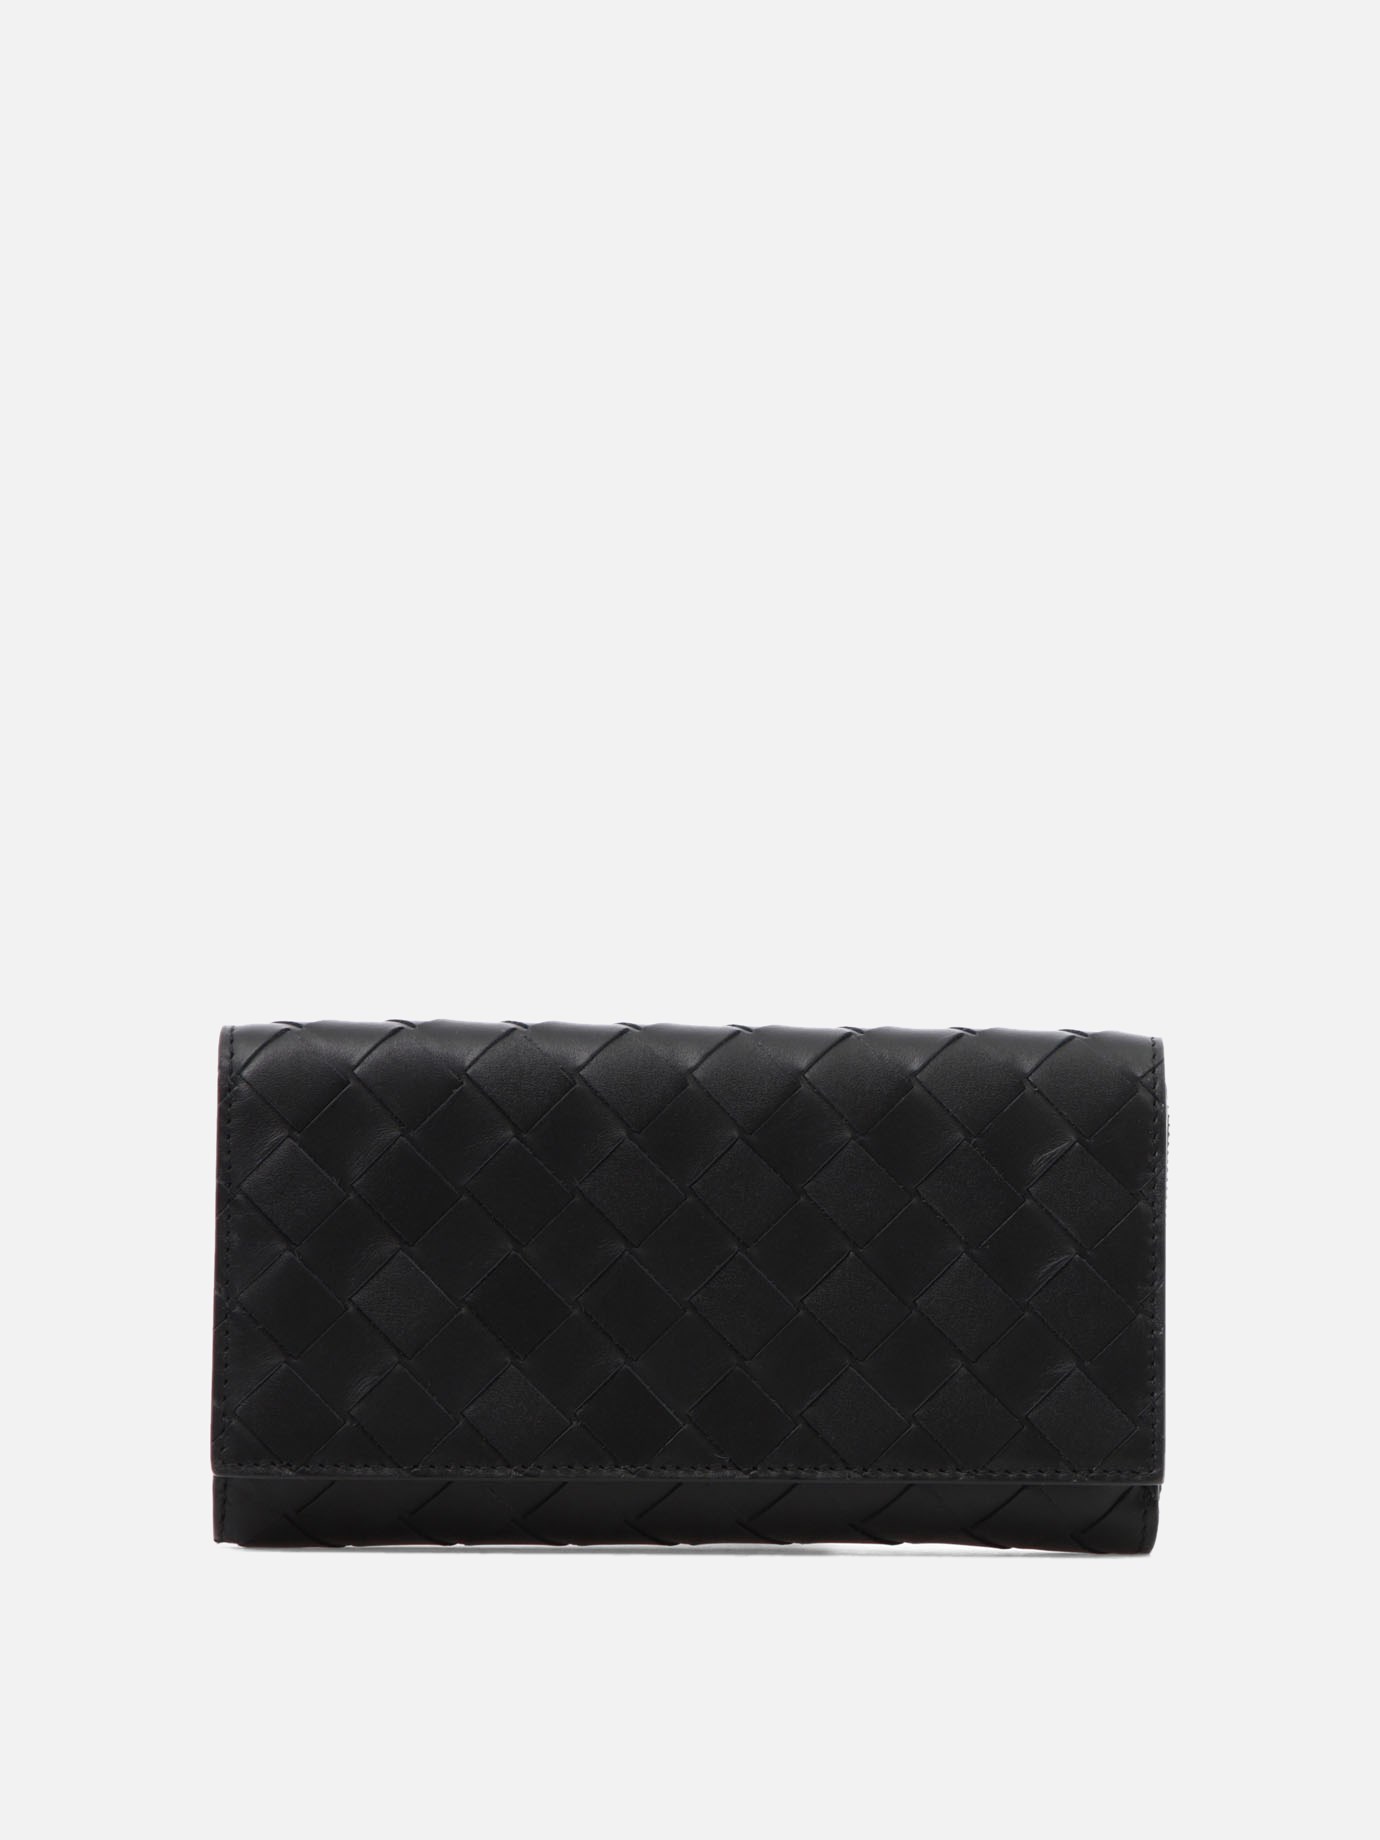 Woven leather walletby Bottega Veneta - 1